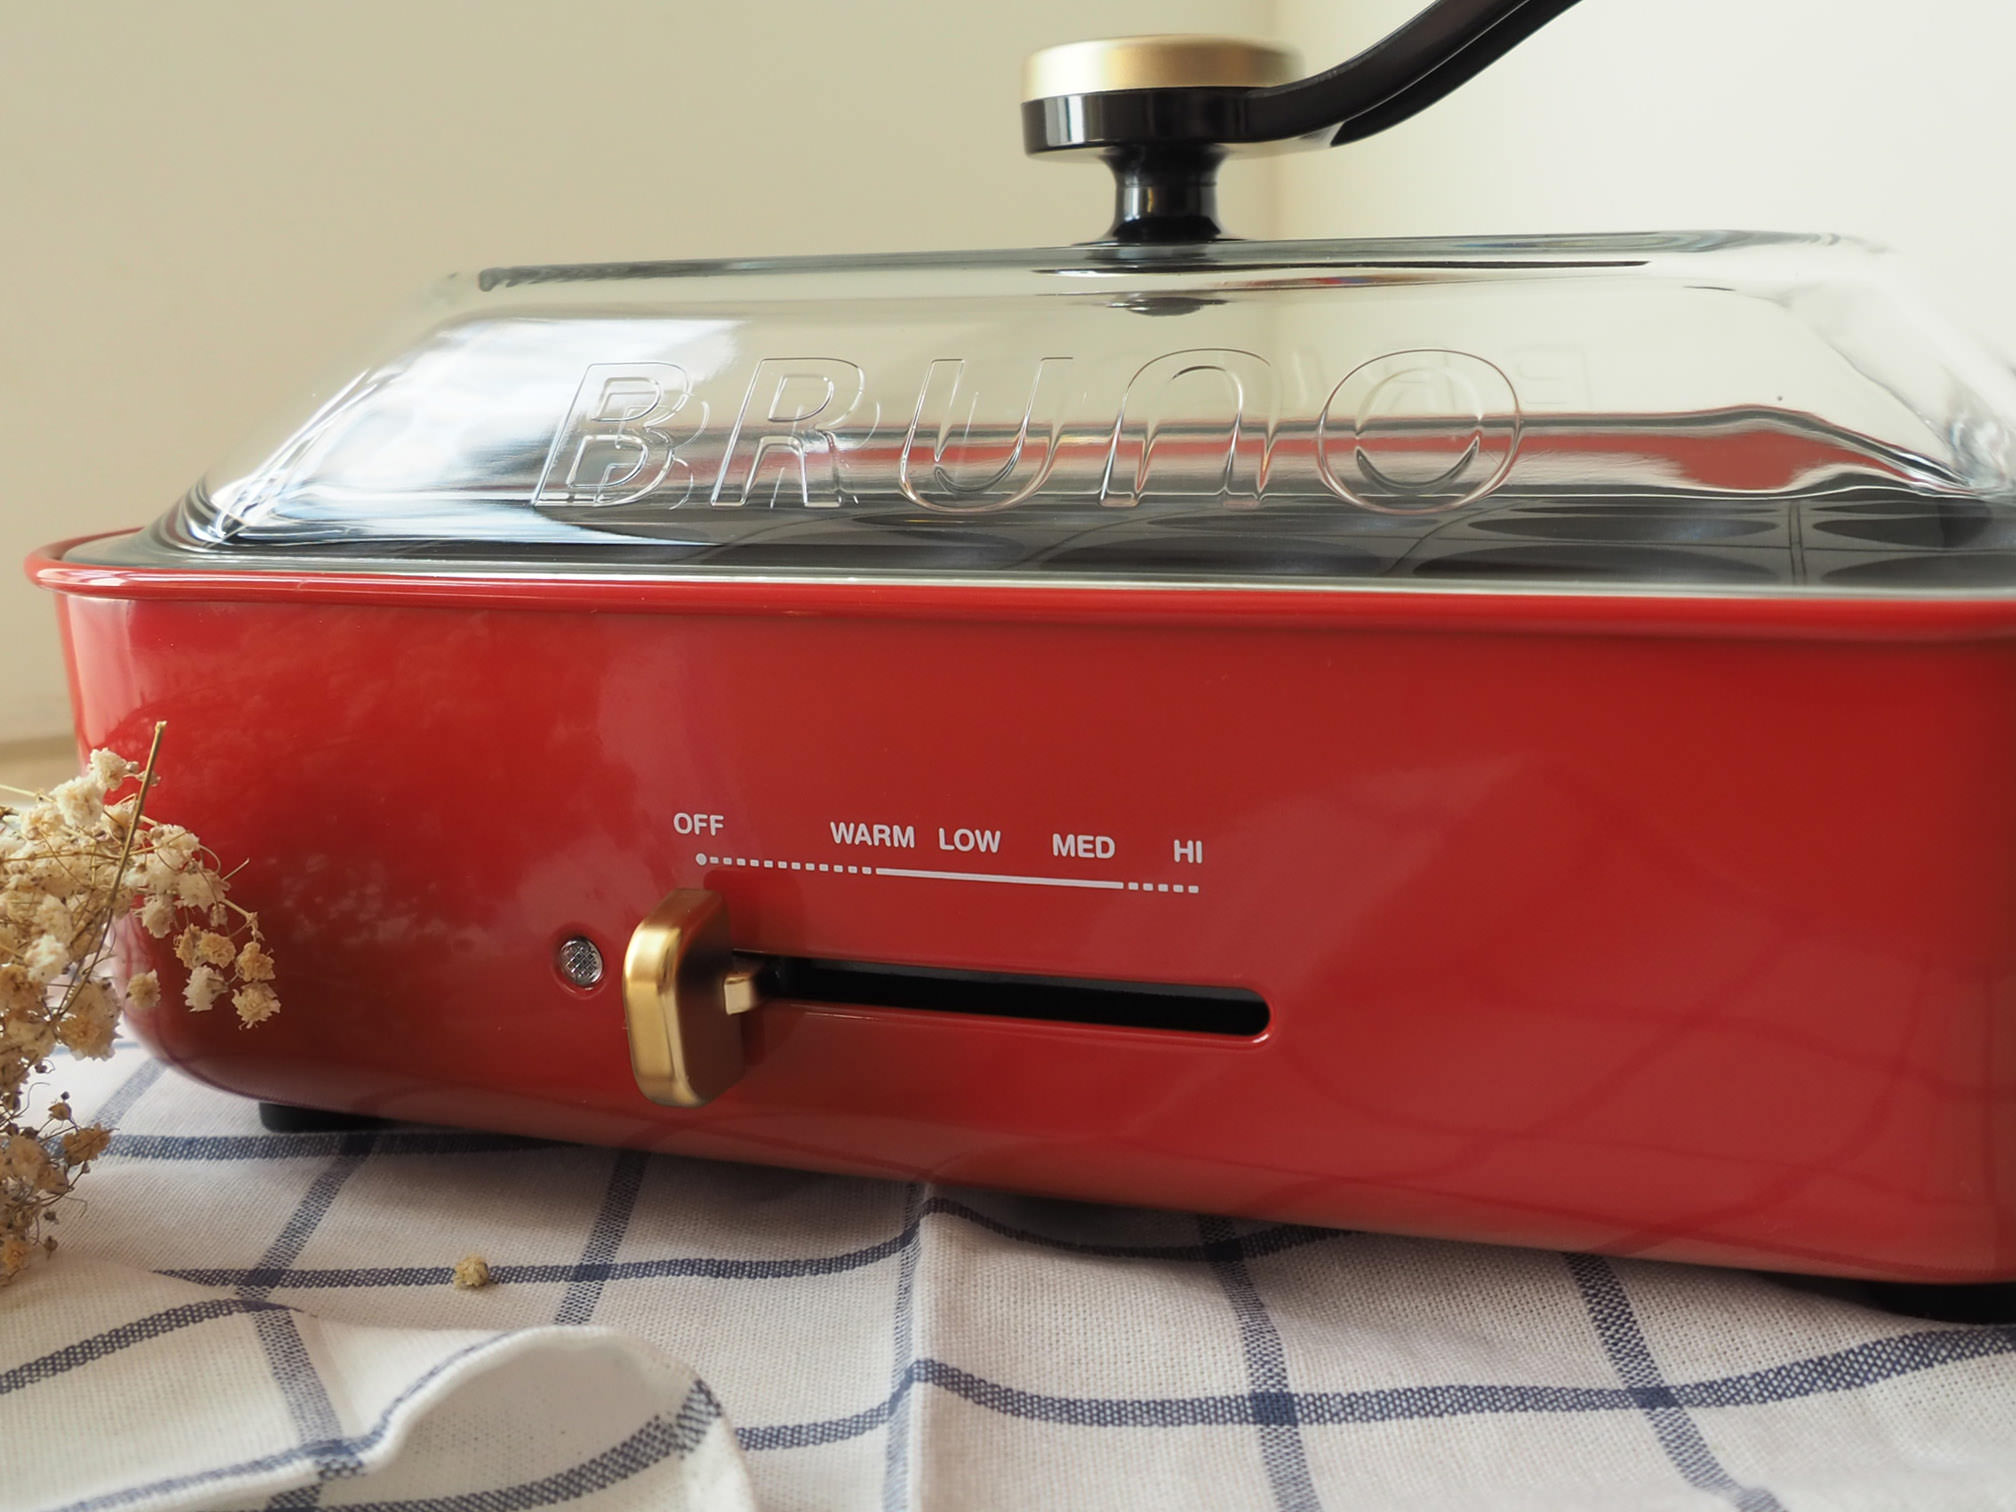 [啾團] 日本超人氣BRUNO多功能電烤盤,料理白癡都能輕鬆搞定的好用質感電烤盤